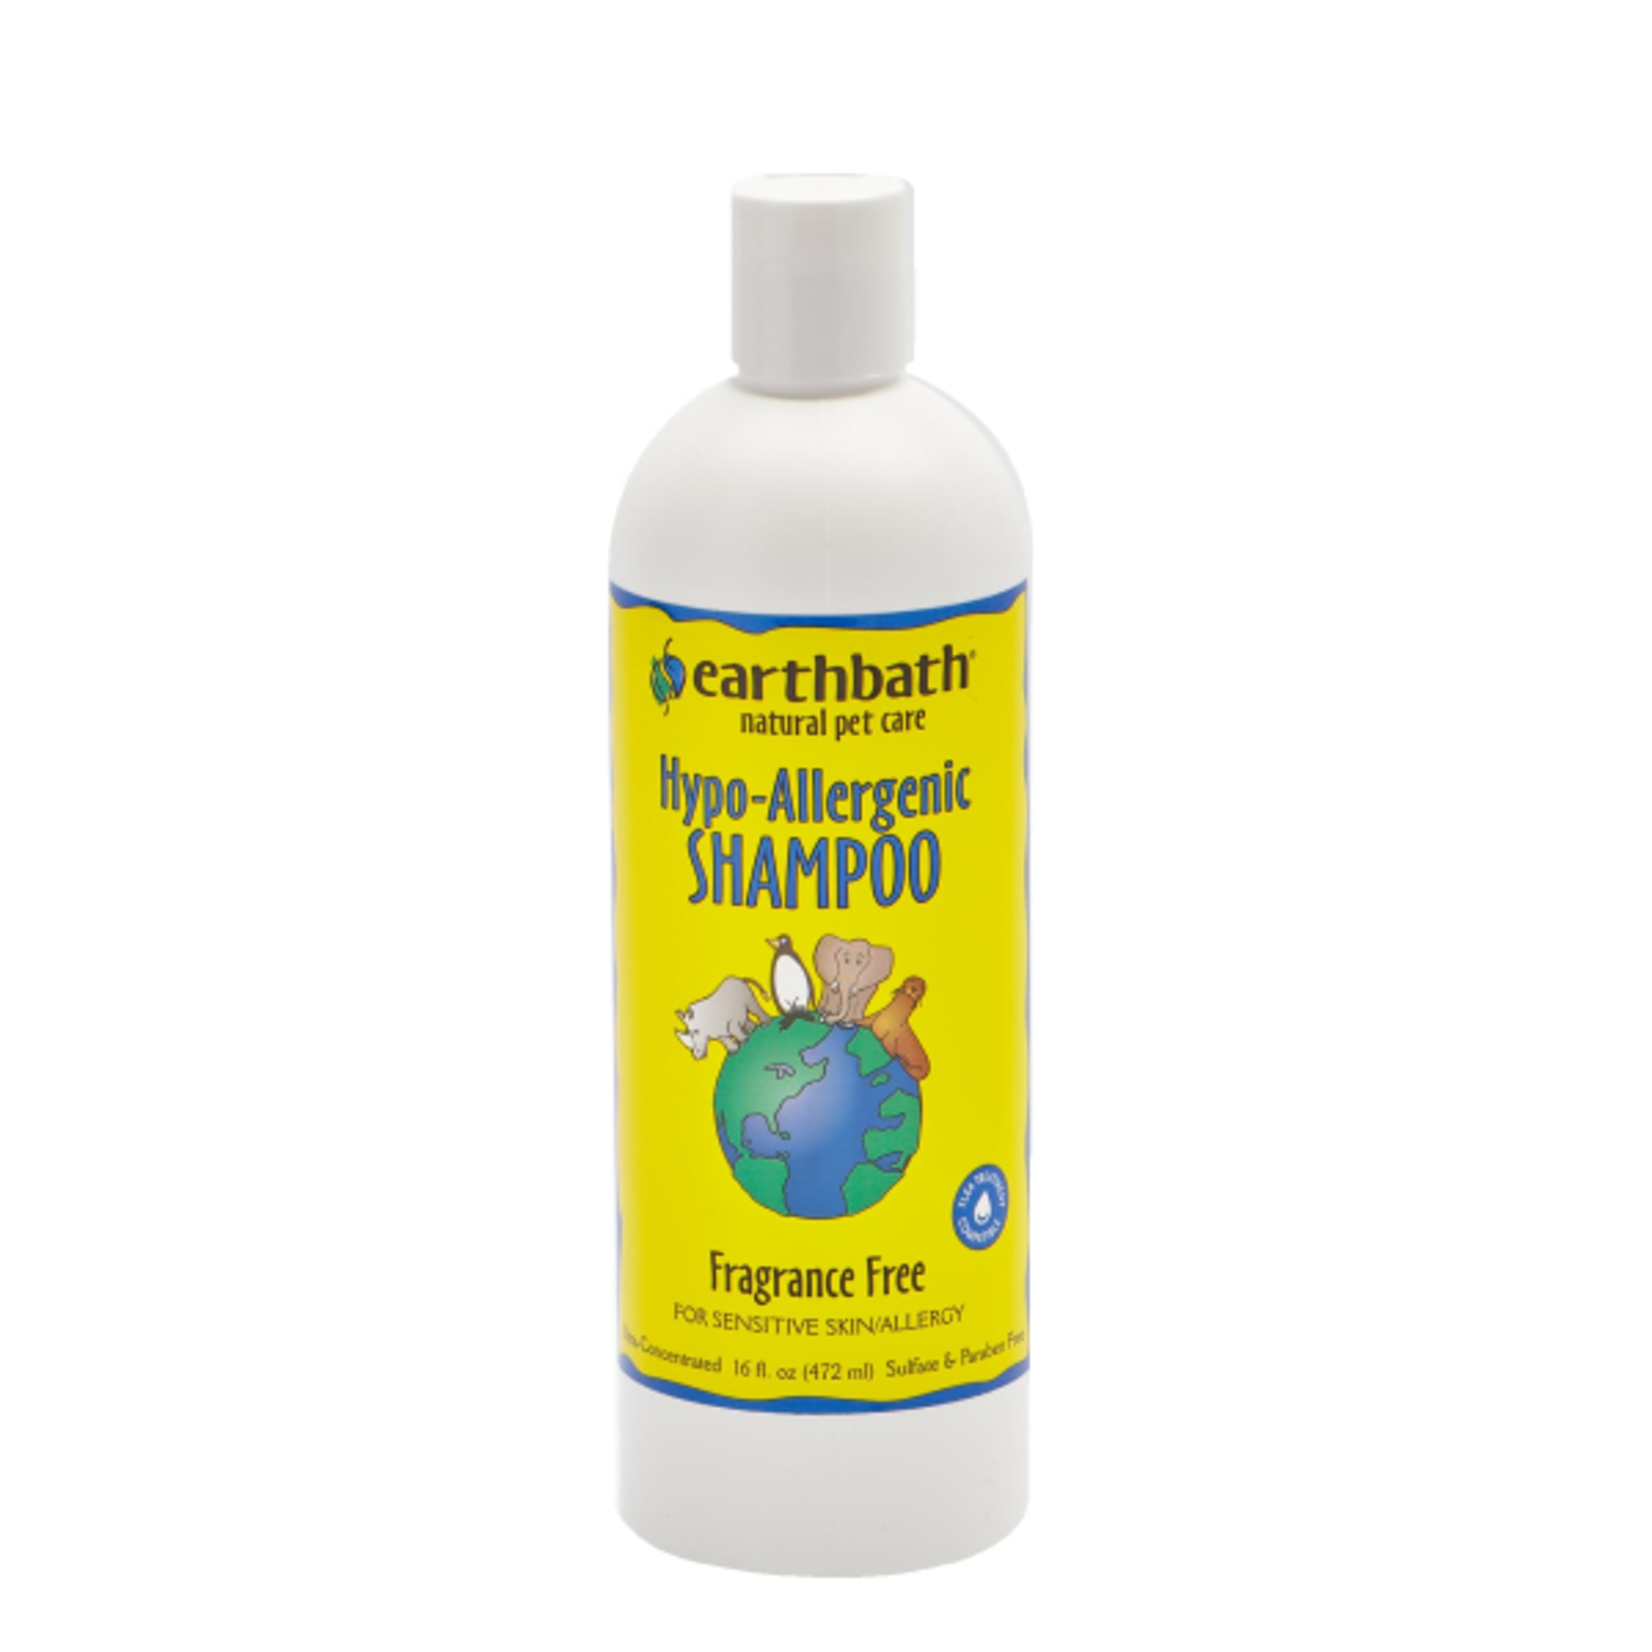 EARTH BATH earthbath Hypo-Allergenic Shampoo Fragrance Free 16 oz